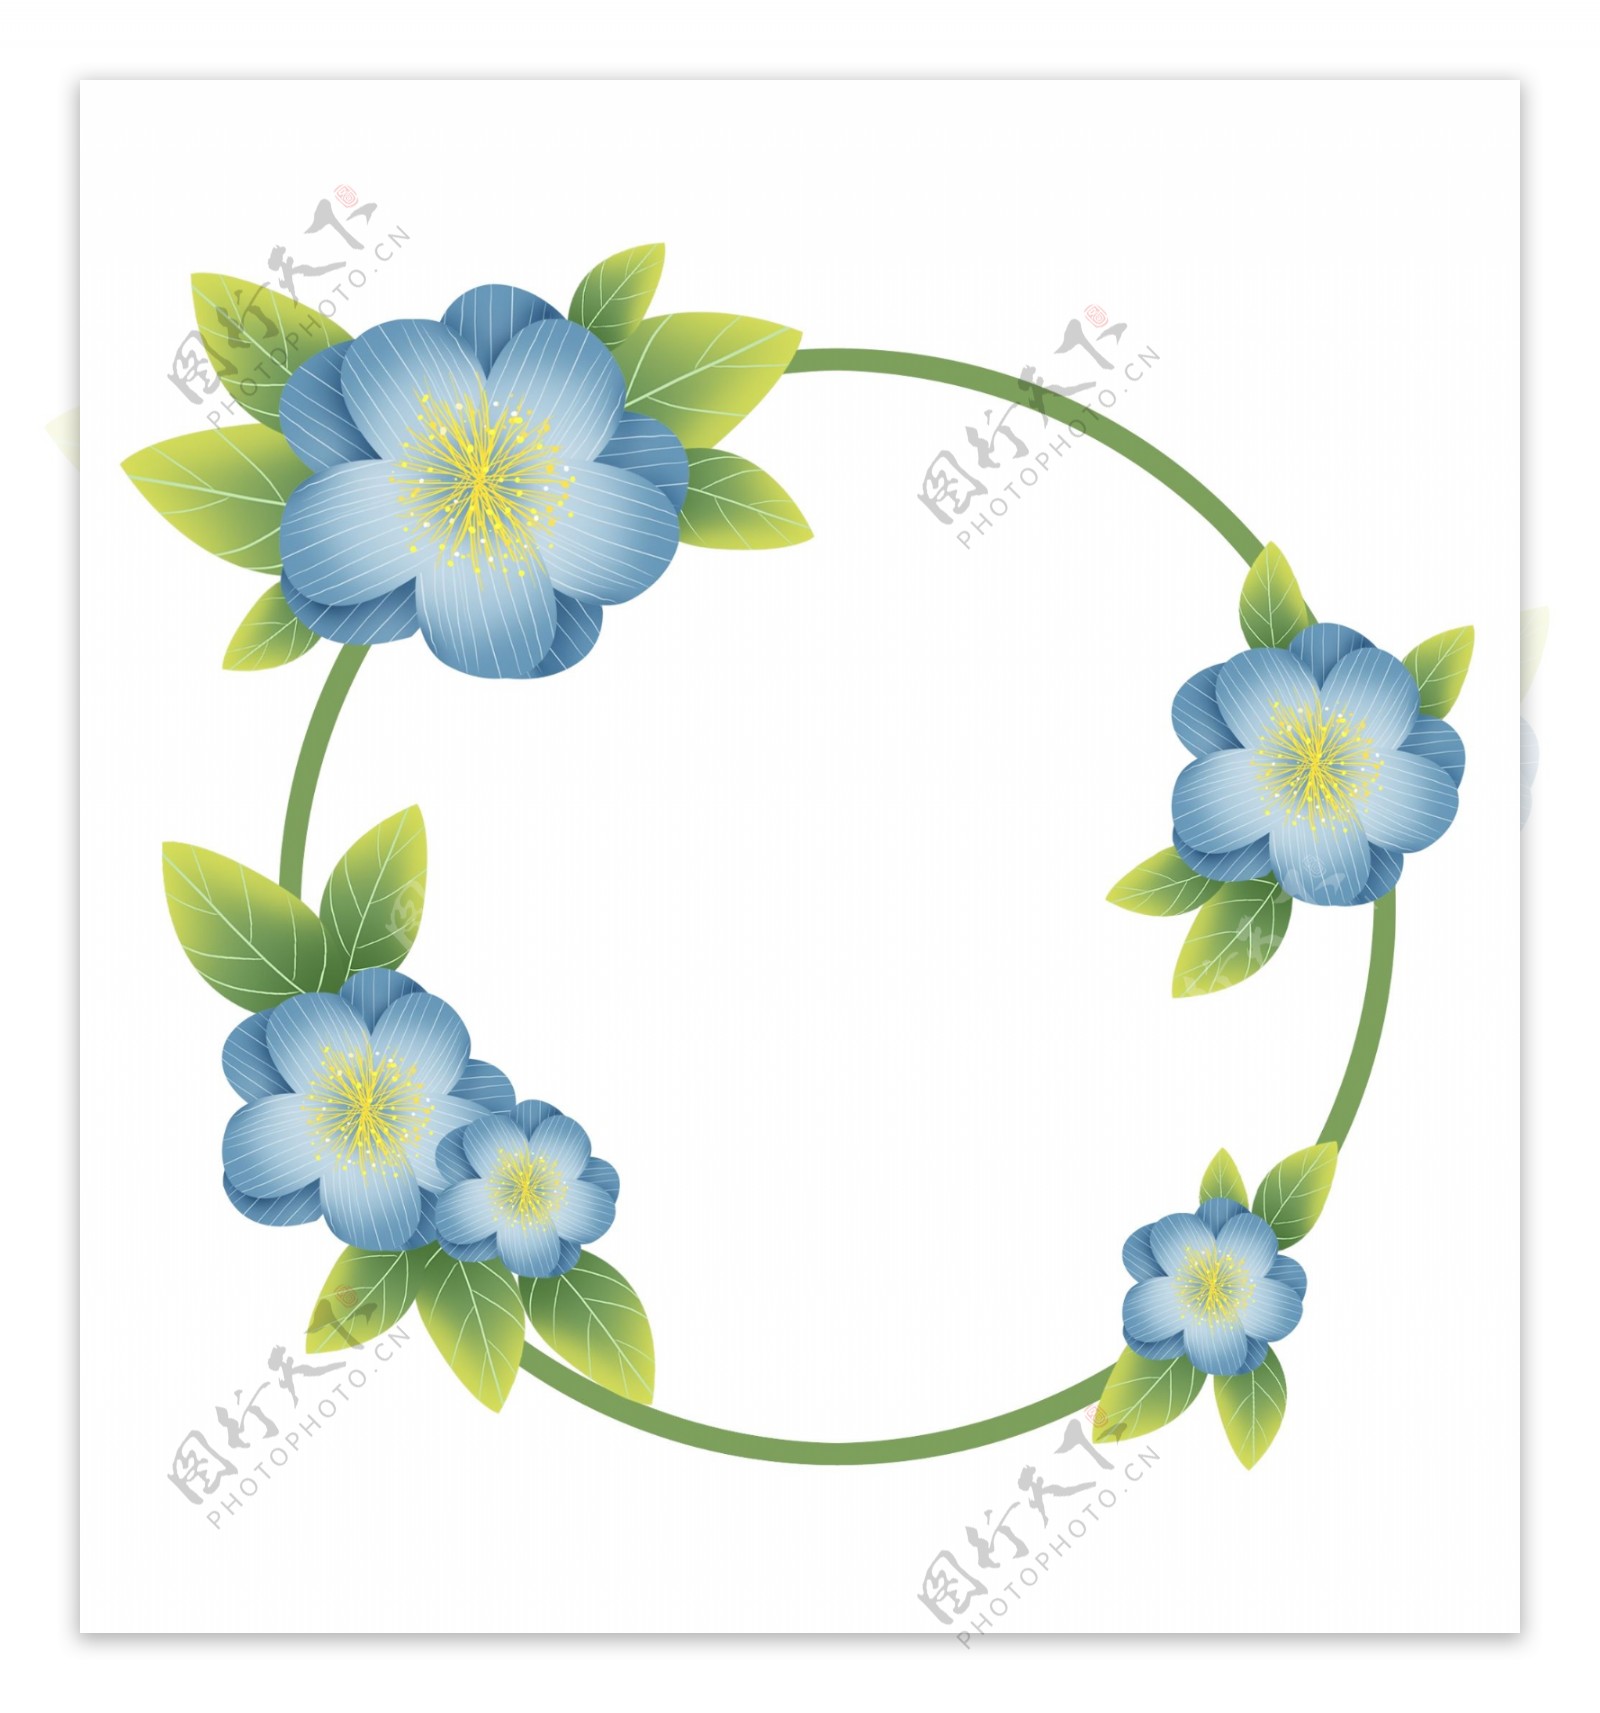 春季蓝色花朵文字框